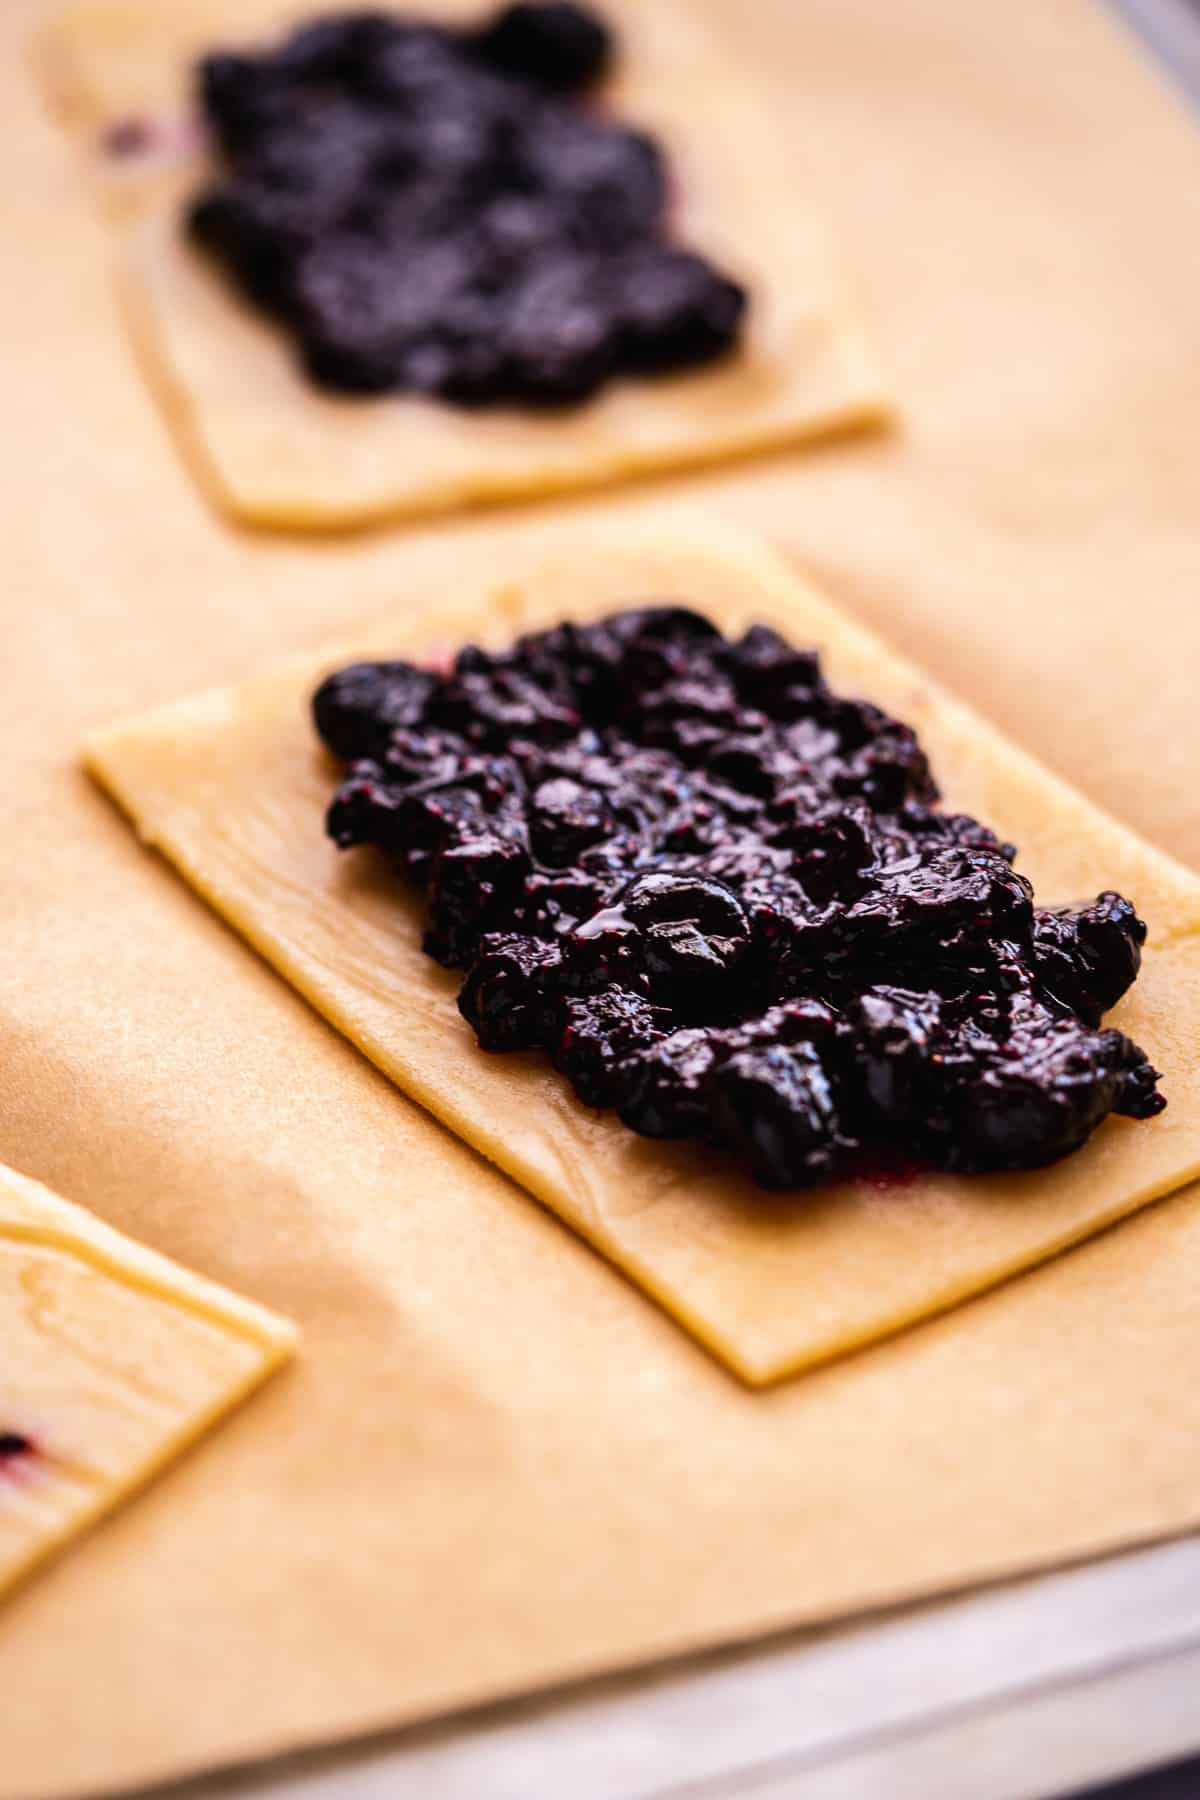 Blueberry jam spread on top of a rectangular piece of pop tart dough.